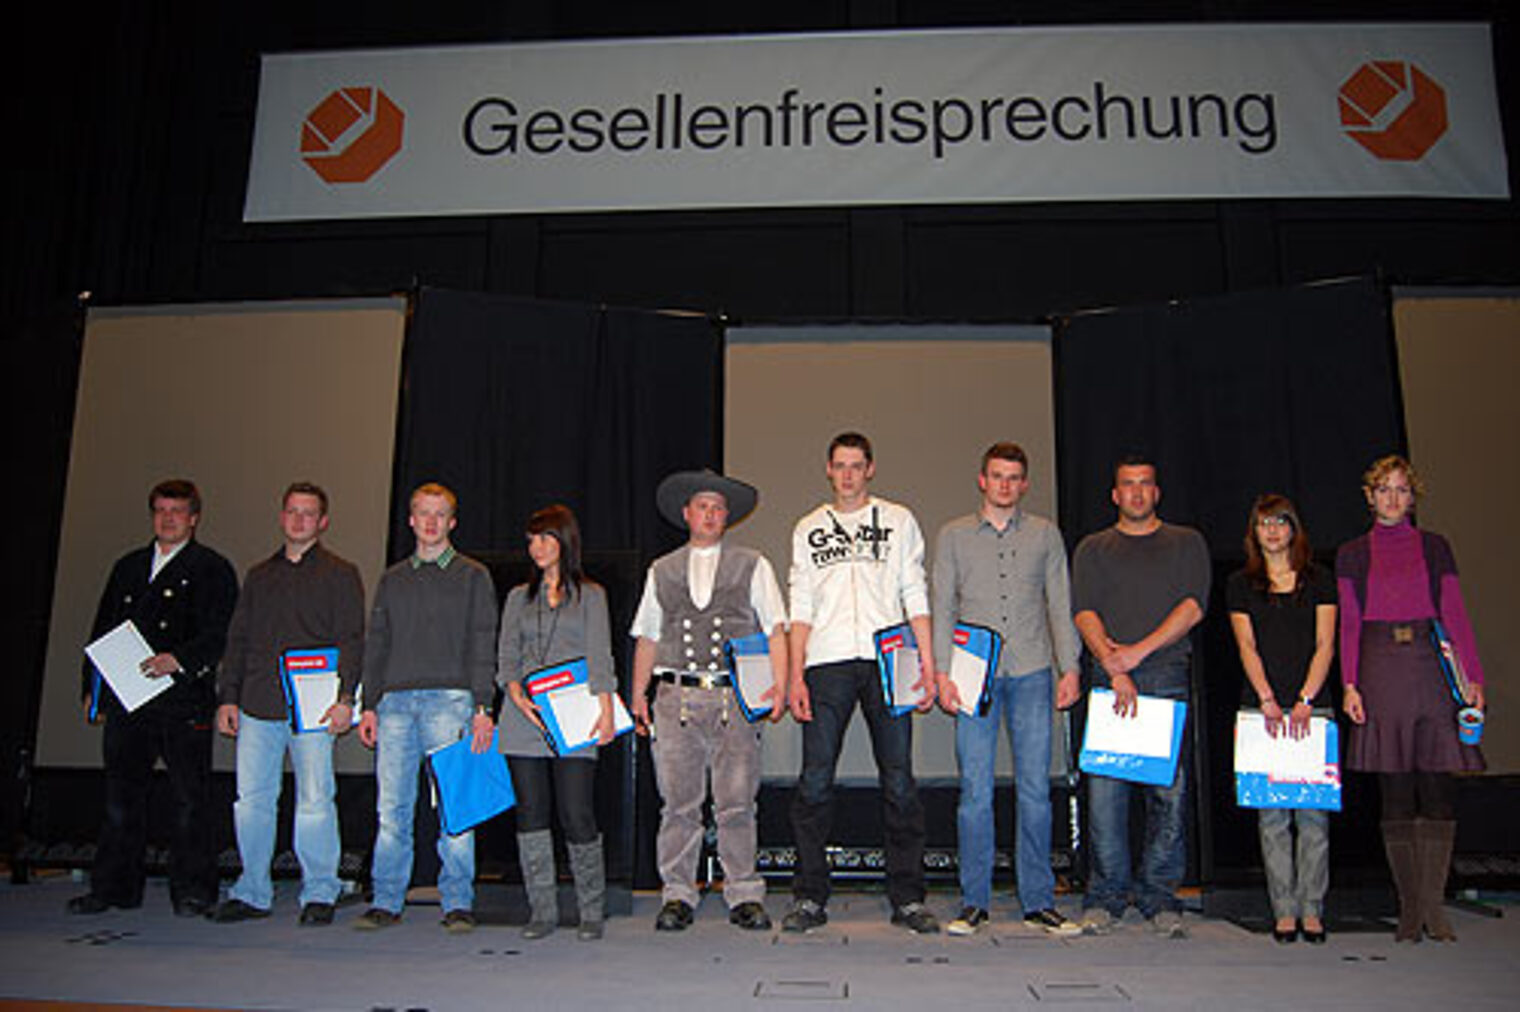 Gesellenfreisprechung am 19. Februar 2010 - Ehrung der Sieger im Leistungsvergleich der Handwerksjugend "Profis leisten was" 2009